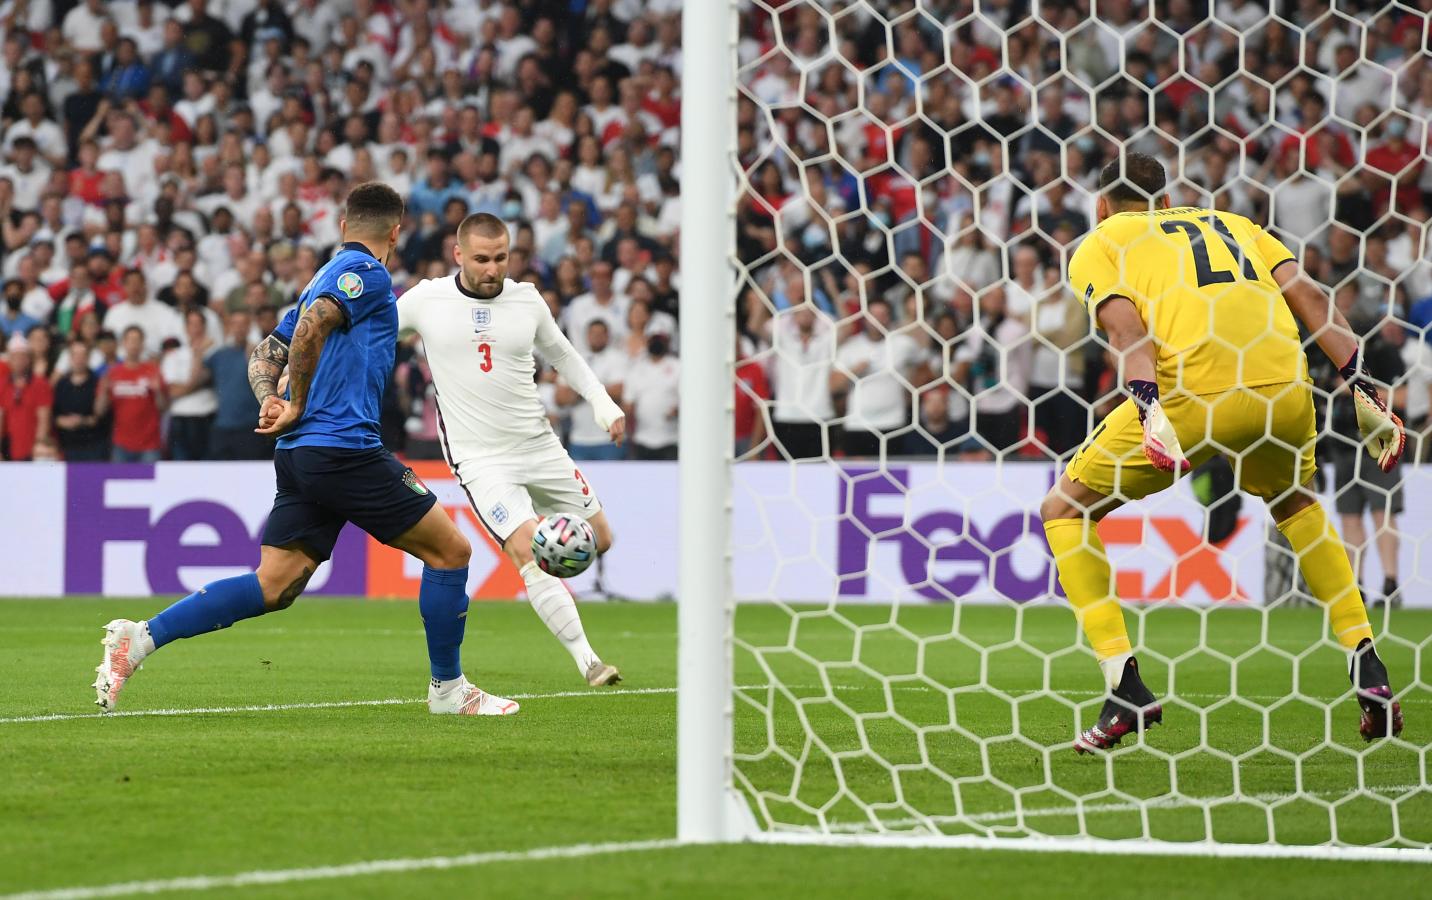 Imagen Luke Shaw está a punto de anotar el 1-0 en Wembley, marcando el gol más rápido en la historia de una final de Eurocopa. Foto: @UEFAcom_es